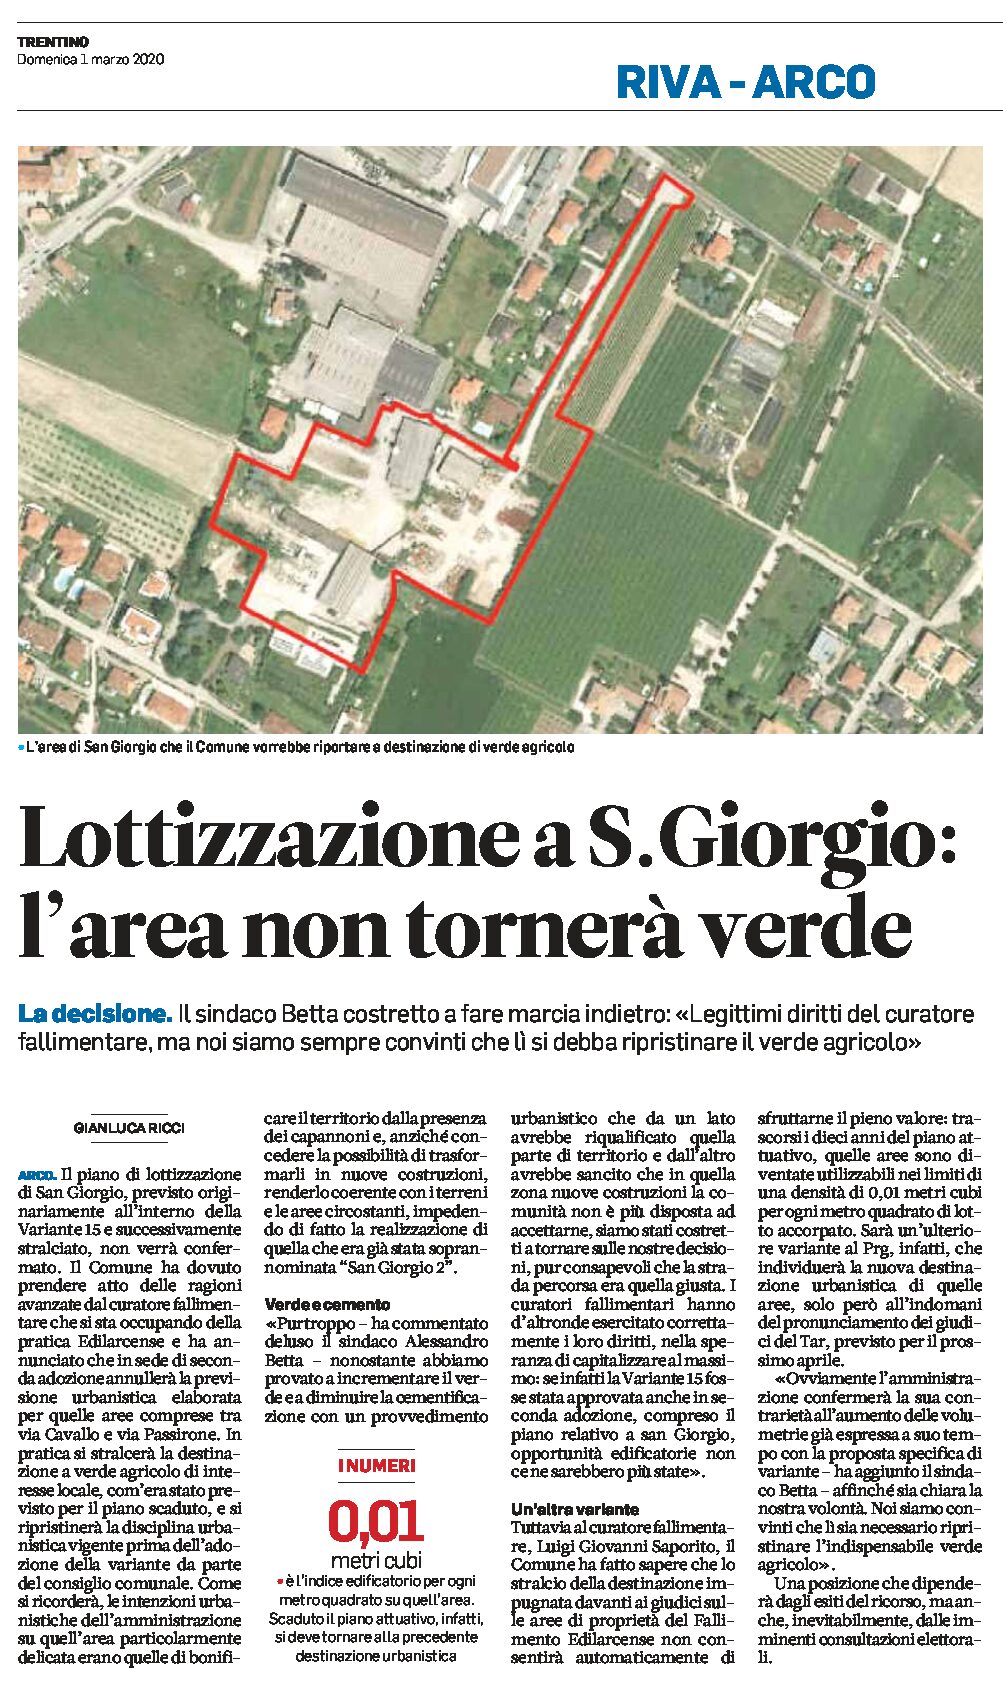 Arco, lottizzazione a San Giorgio: l’area non tornerà verde